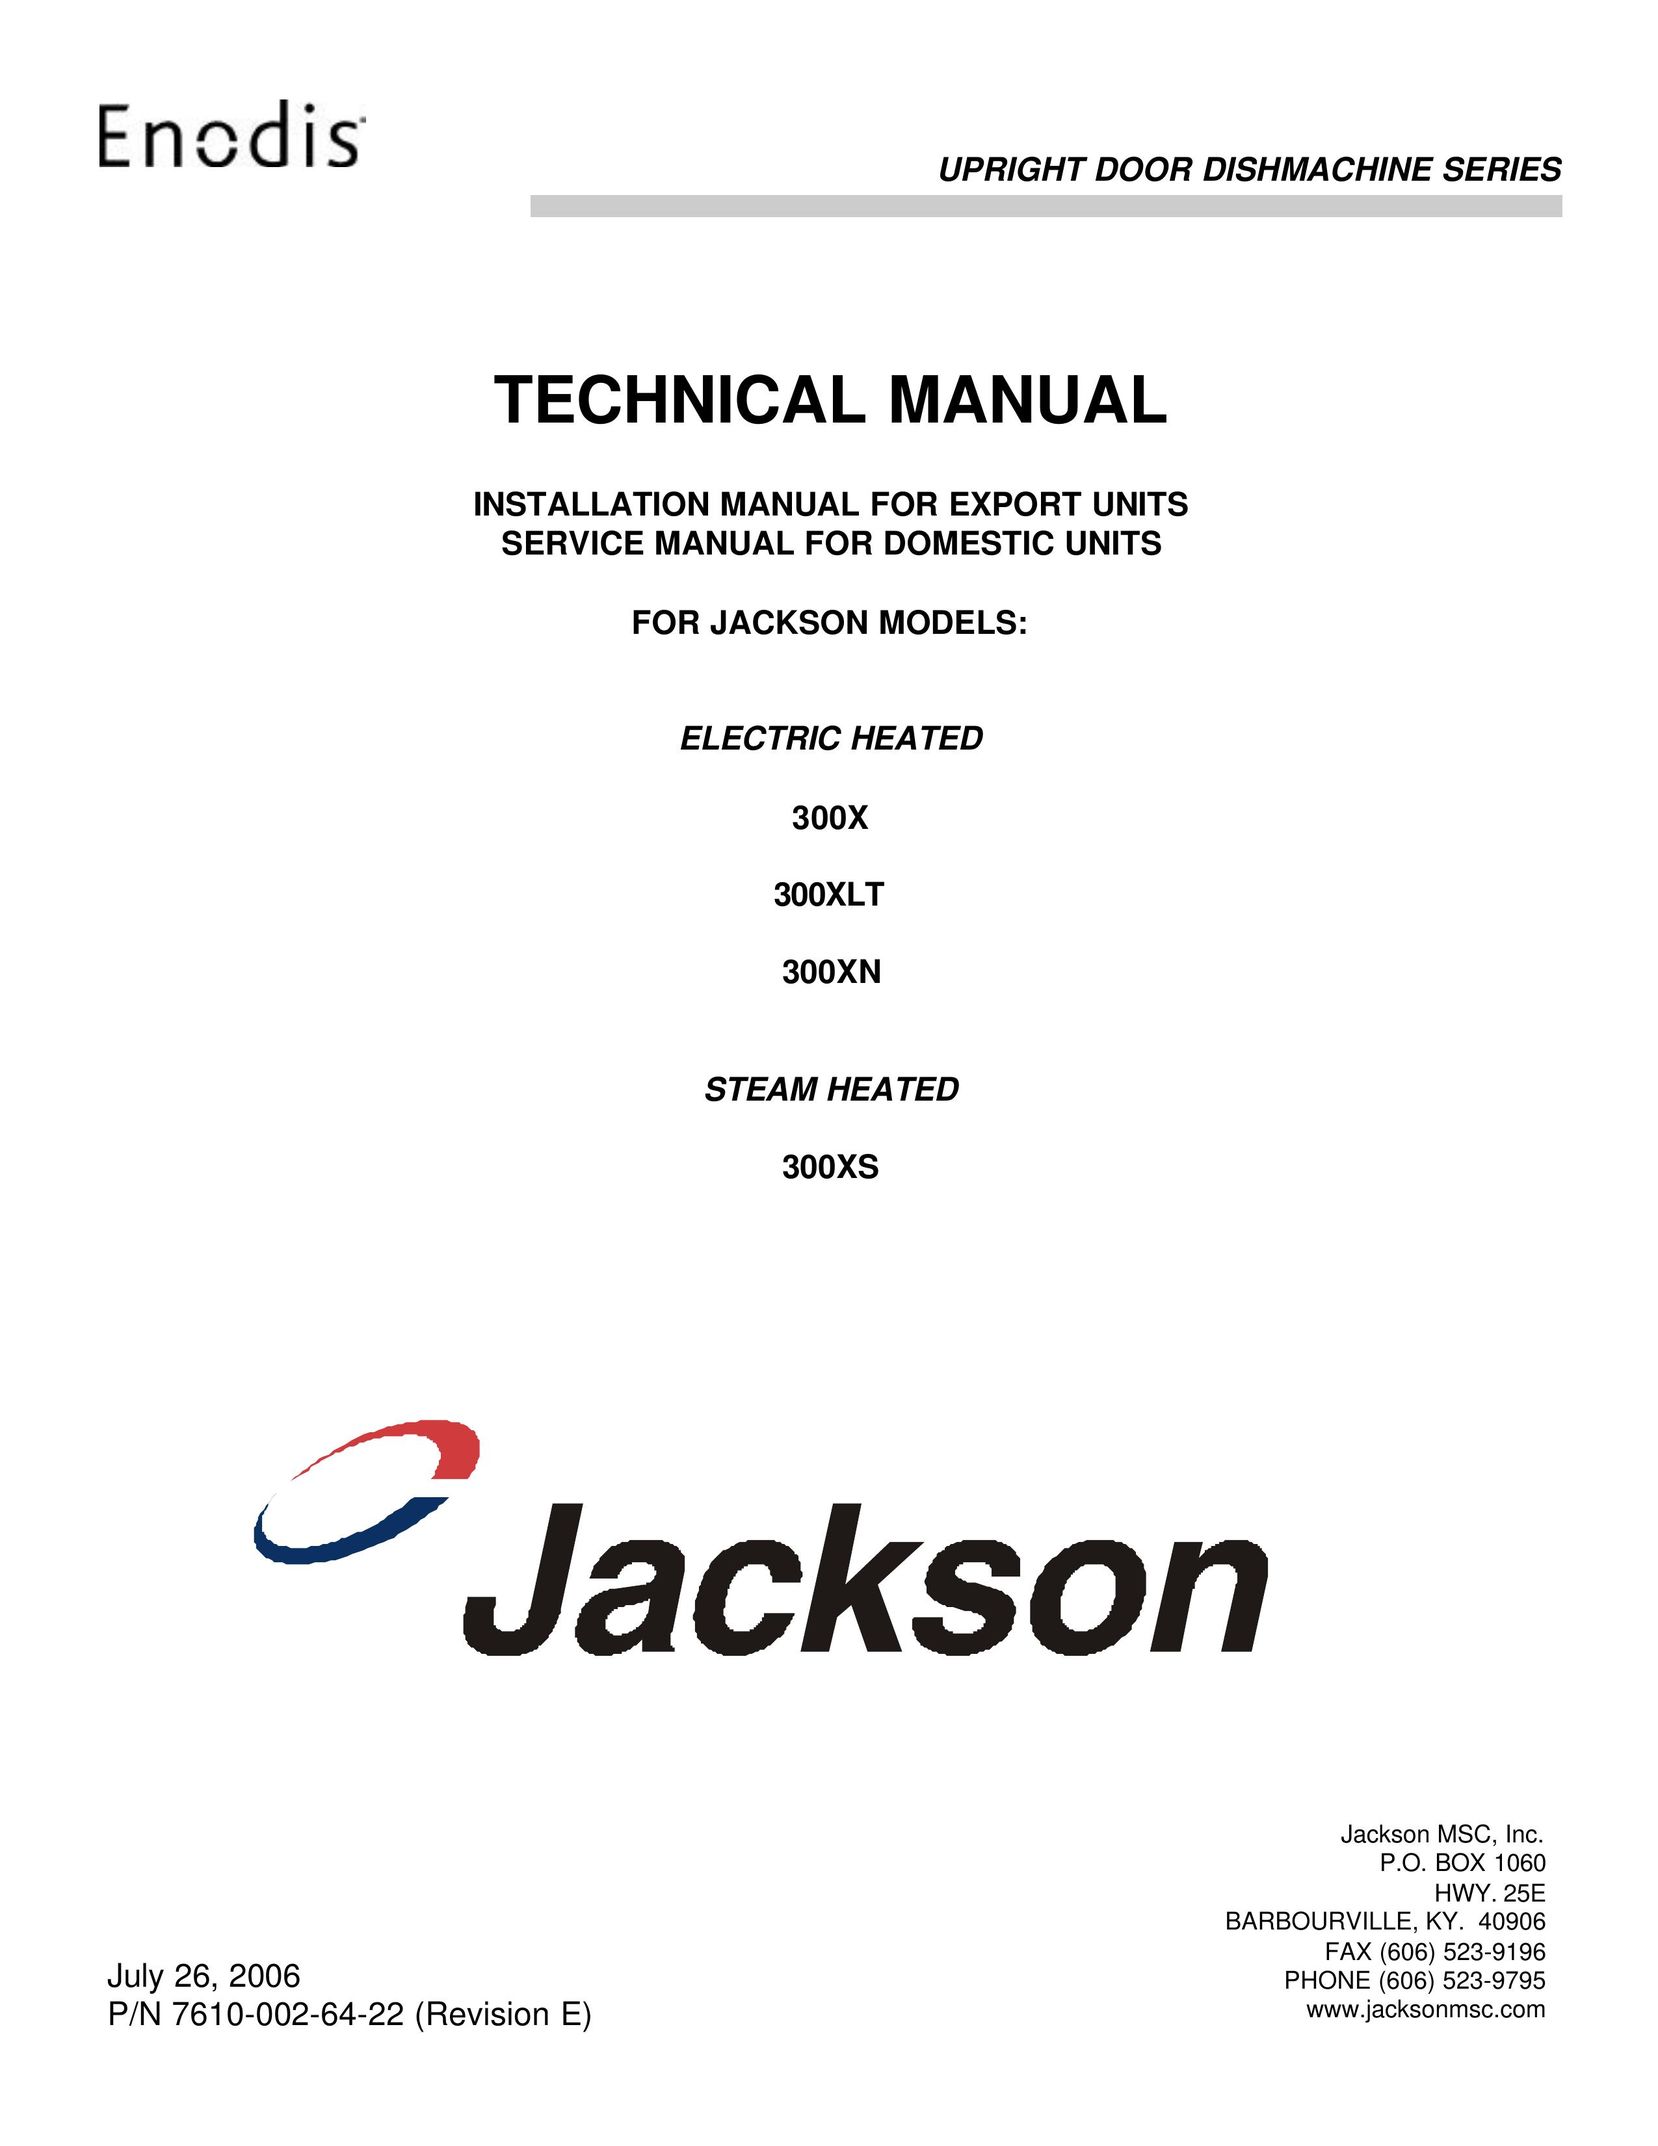 Jackson 300XS Dishwasher User Manual